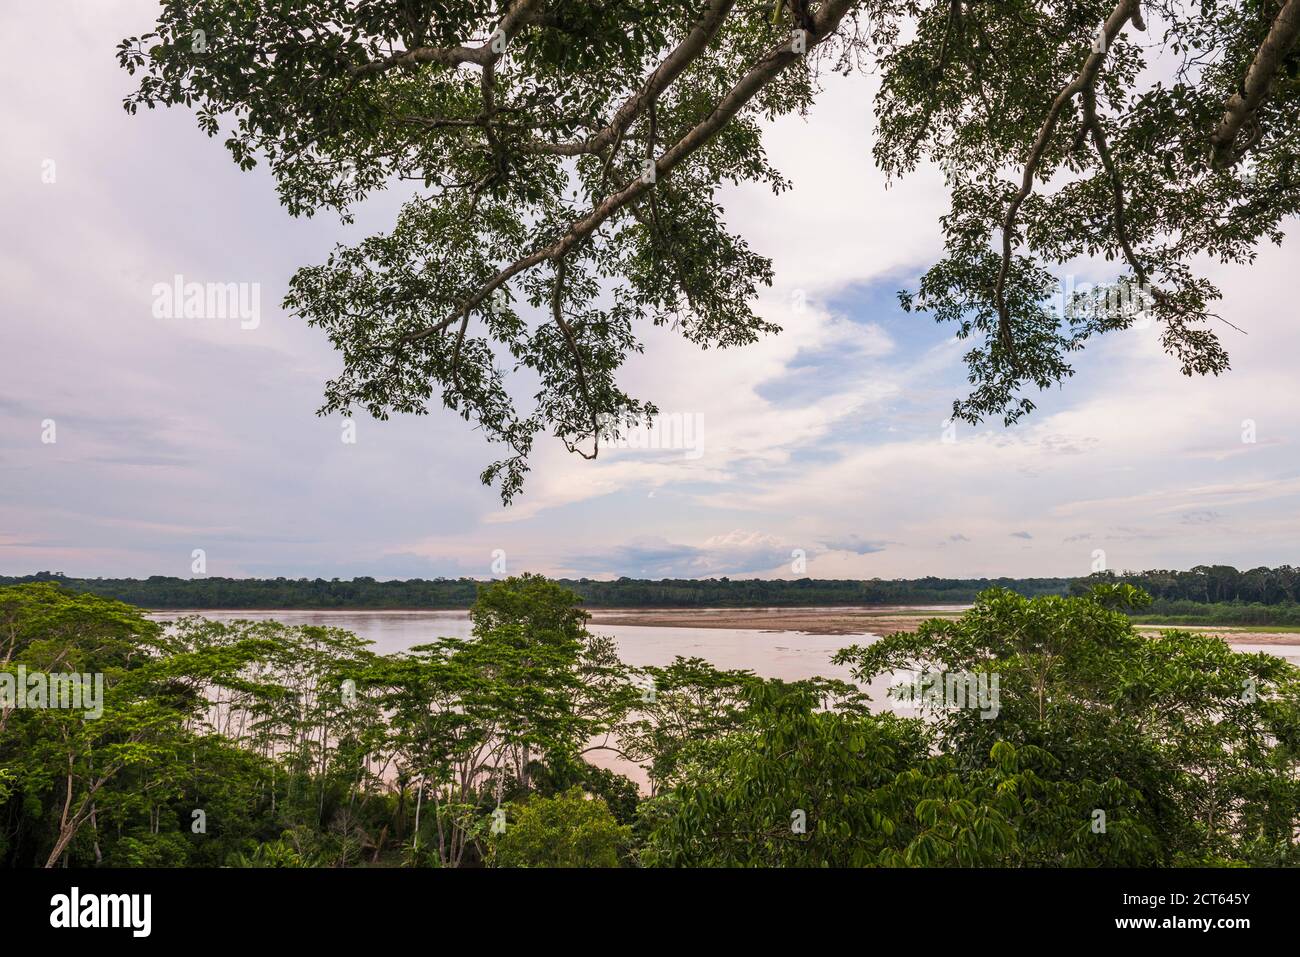 Madre de Dios River, Tambopata National Reserve, Puerto Maldonado Amazon Jungle area of Peru, South America Stock Photo